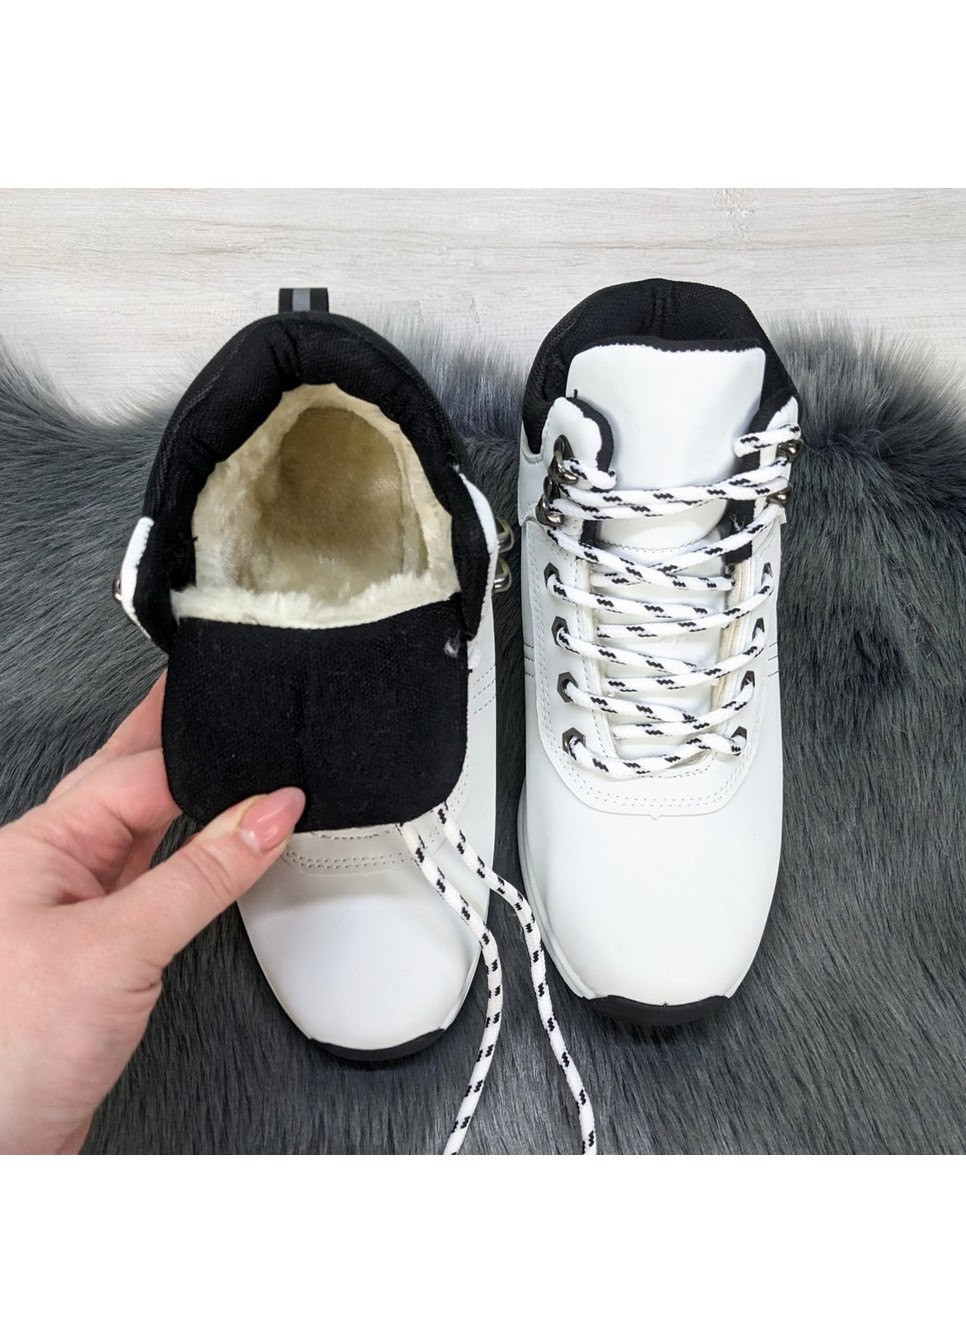 Зимние ботинки женские зимниме спортивного типа Dual из искусственного нубука